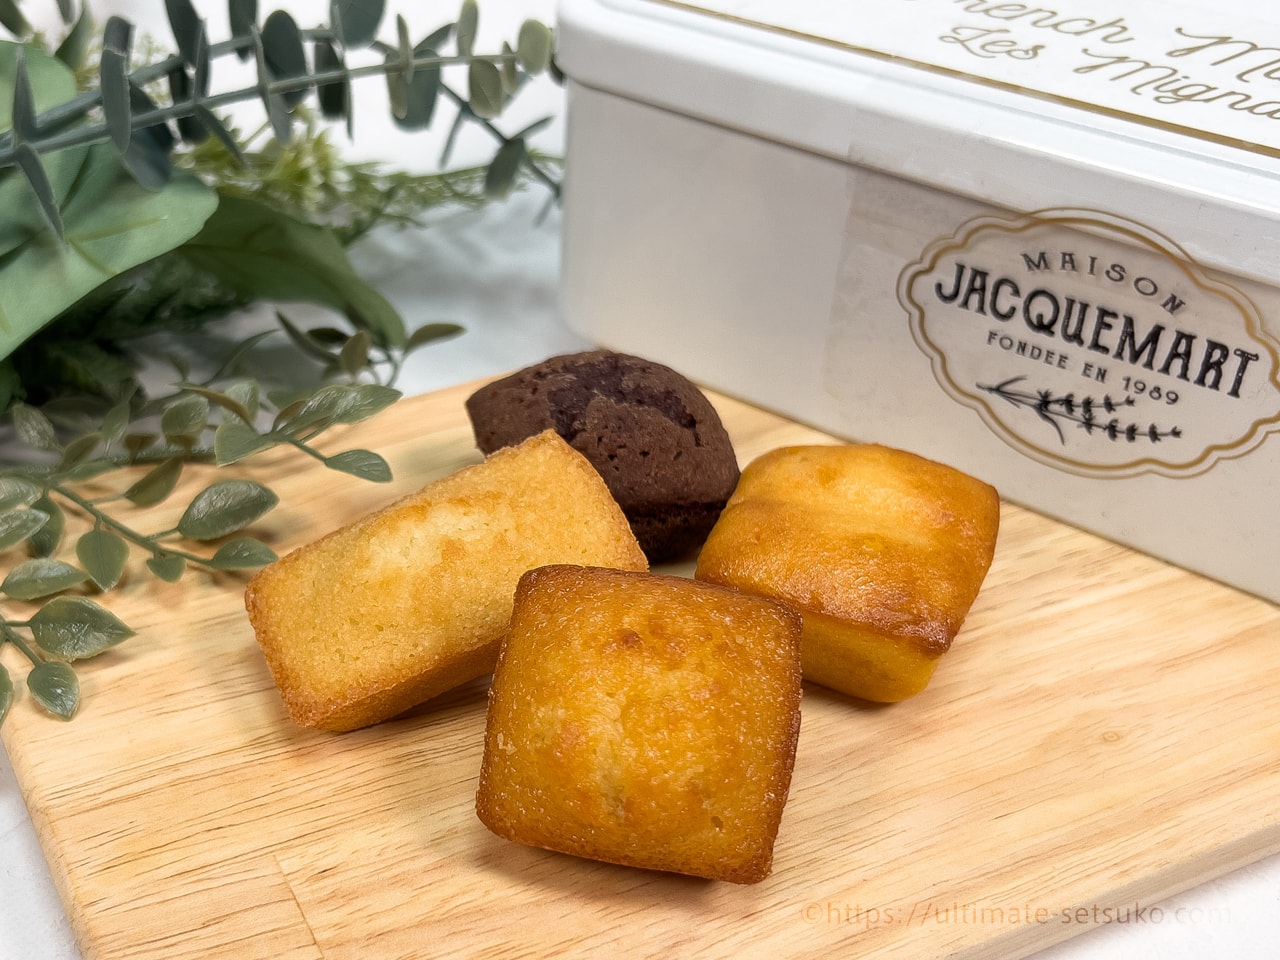 コストコの新商品のメゾンジャックマートのフィナンシェアソートはフランスから直輸入された伝統焼菓子